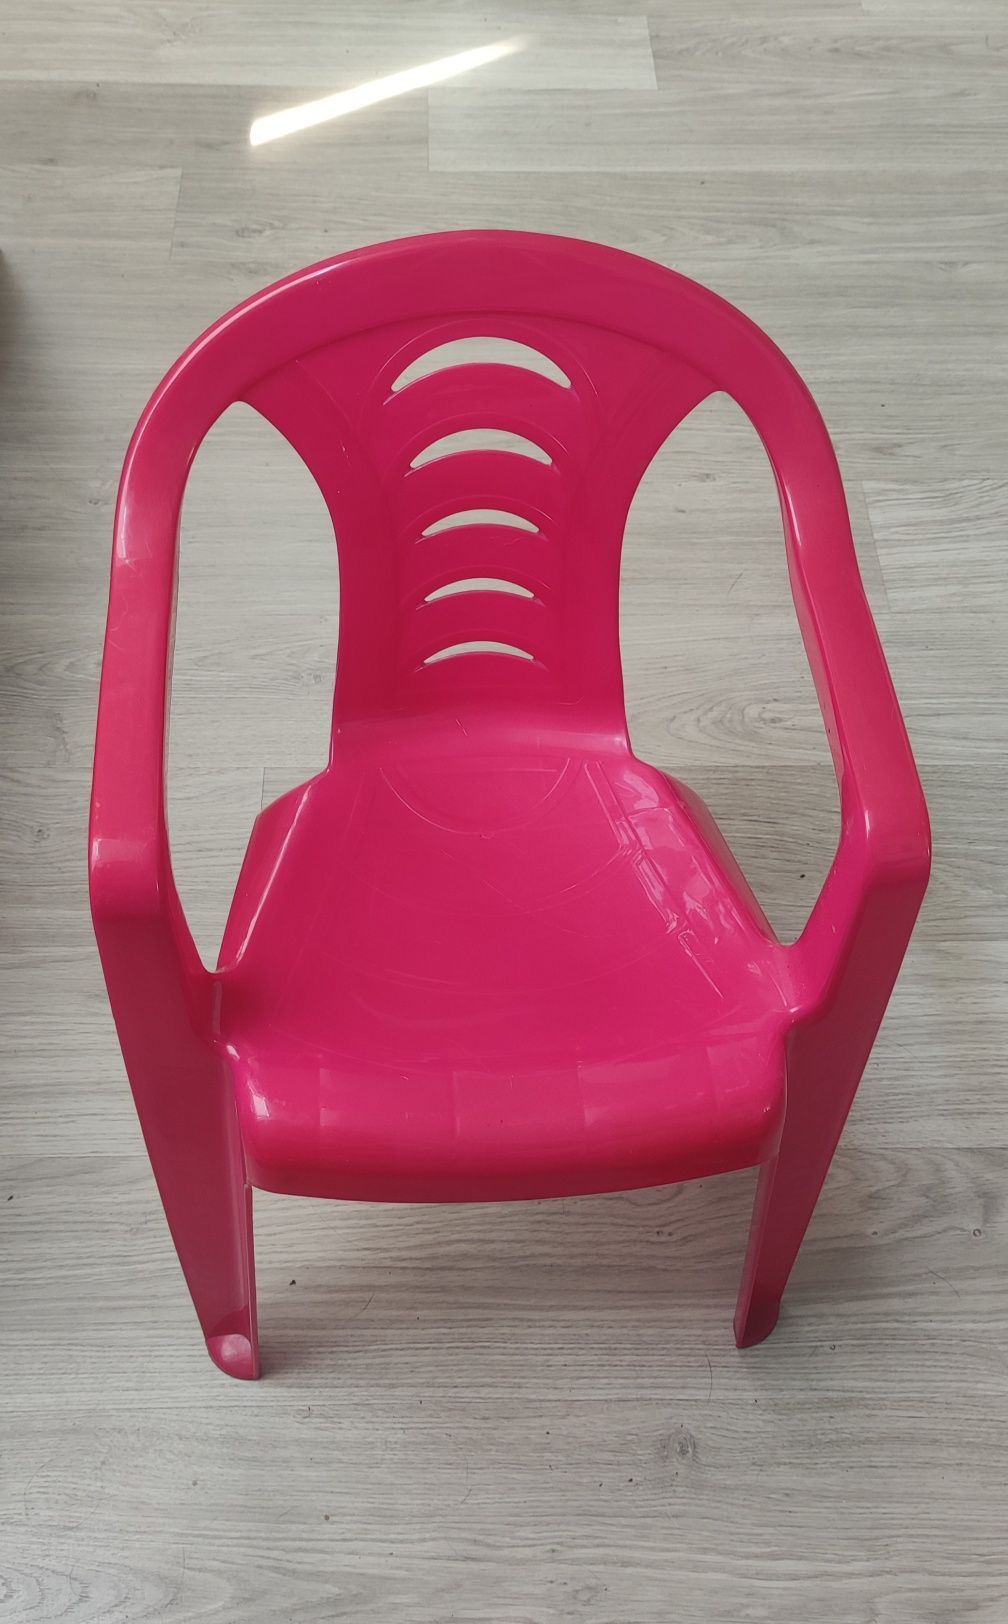 Krzesło ogrodowe dla dziecka